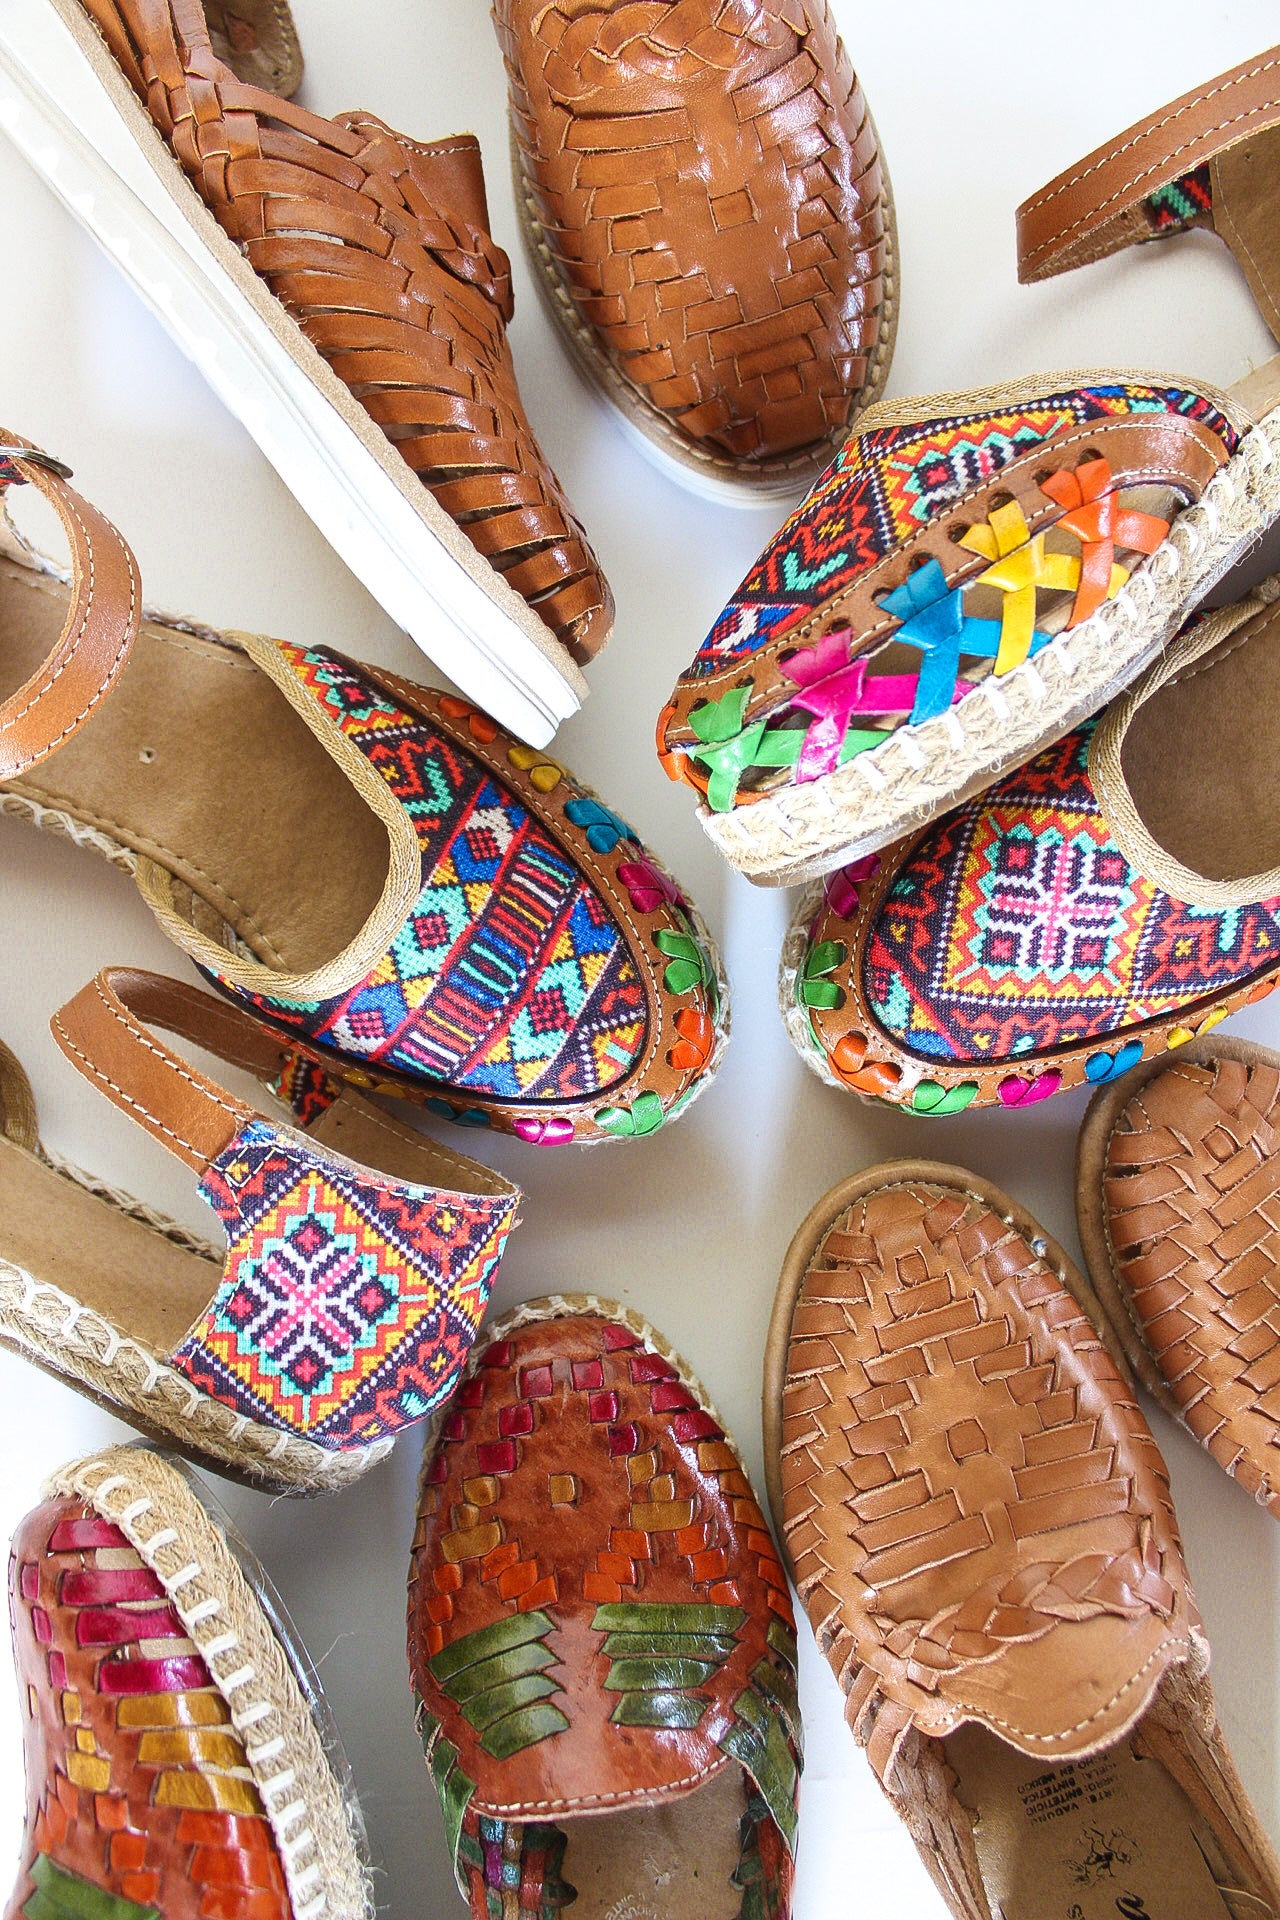 Authentic Huarache Sandals